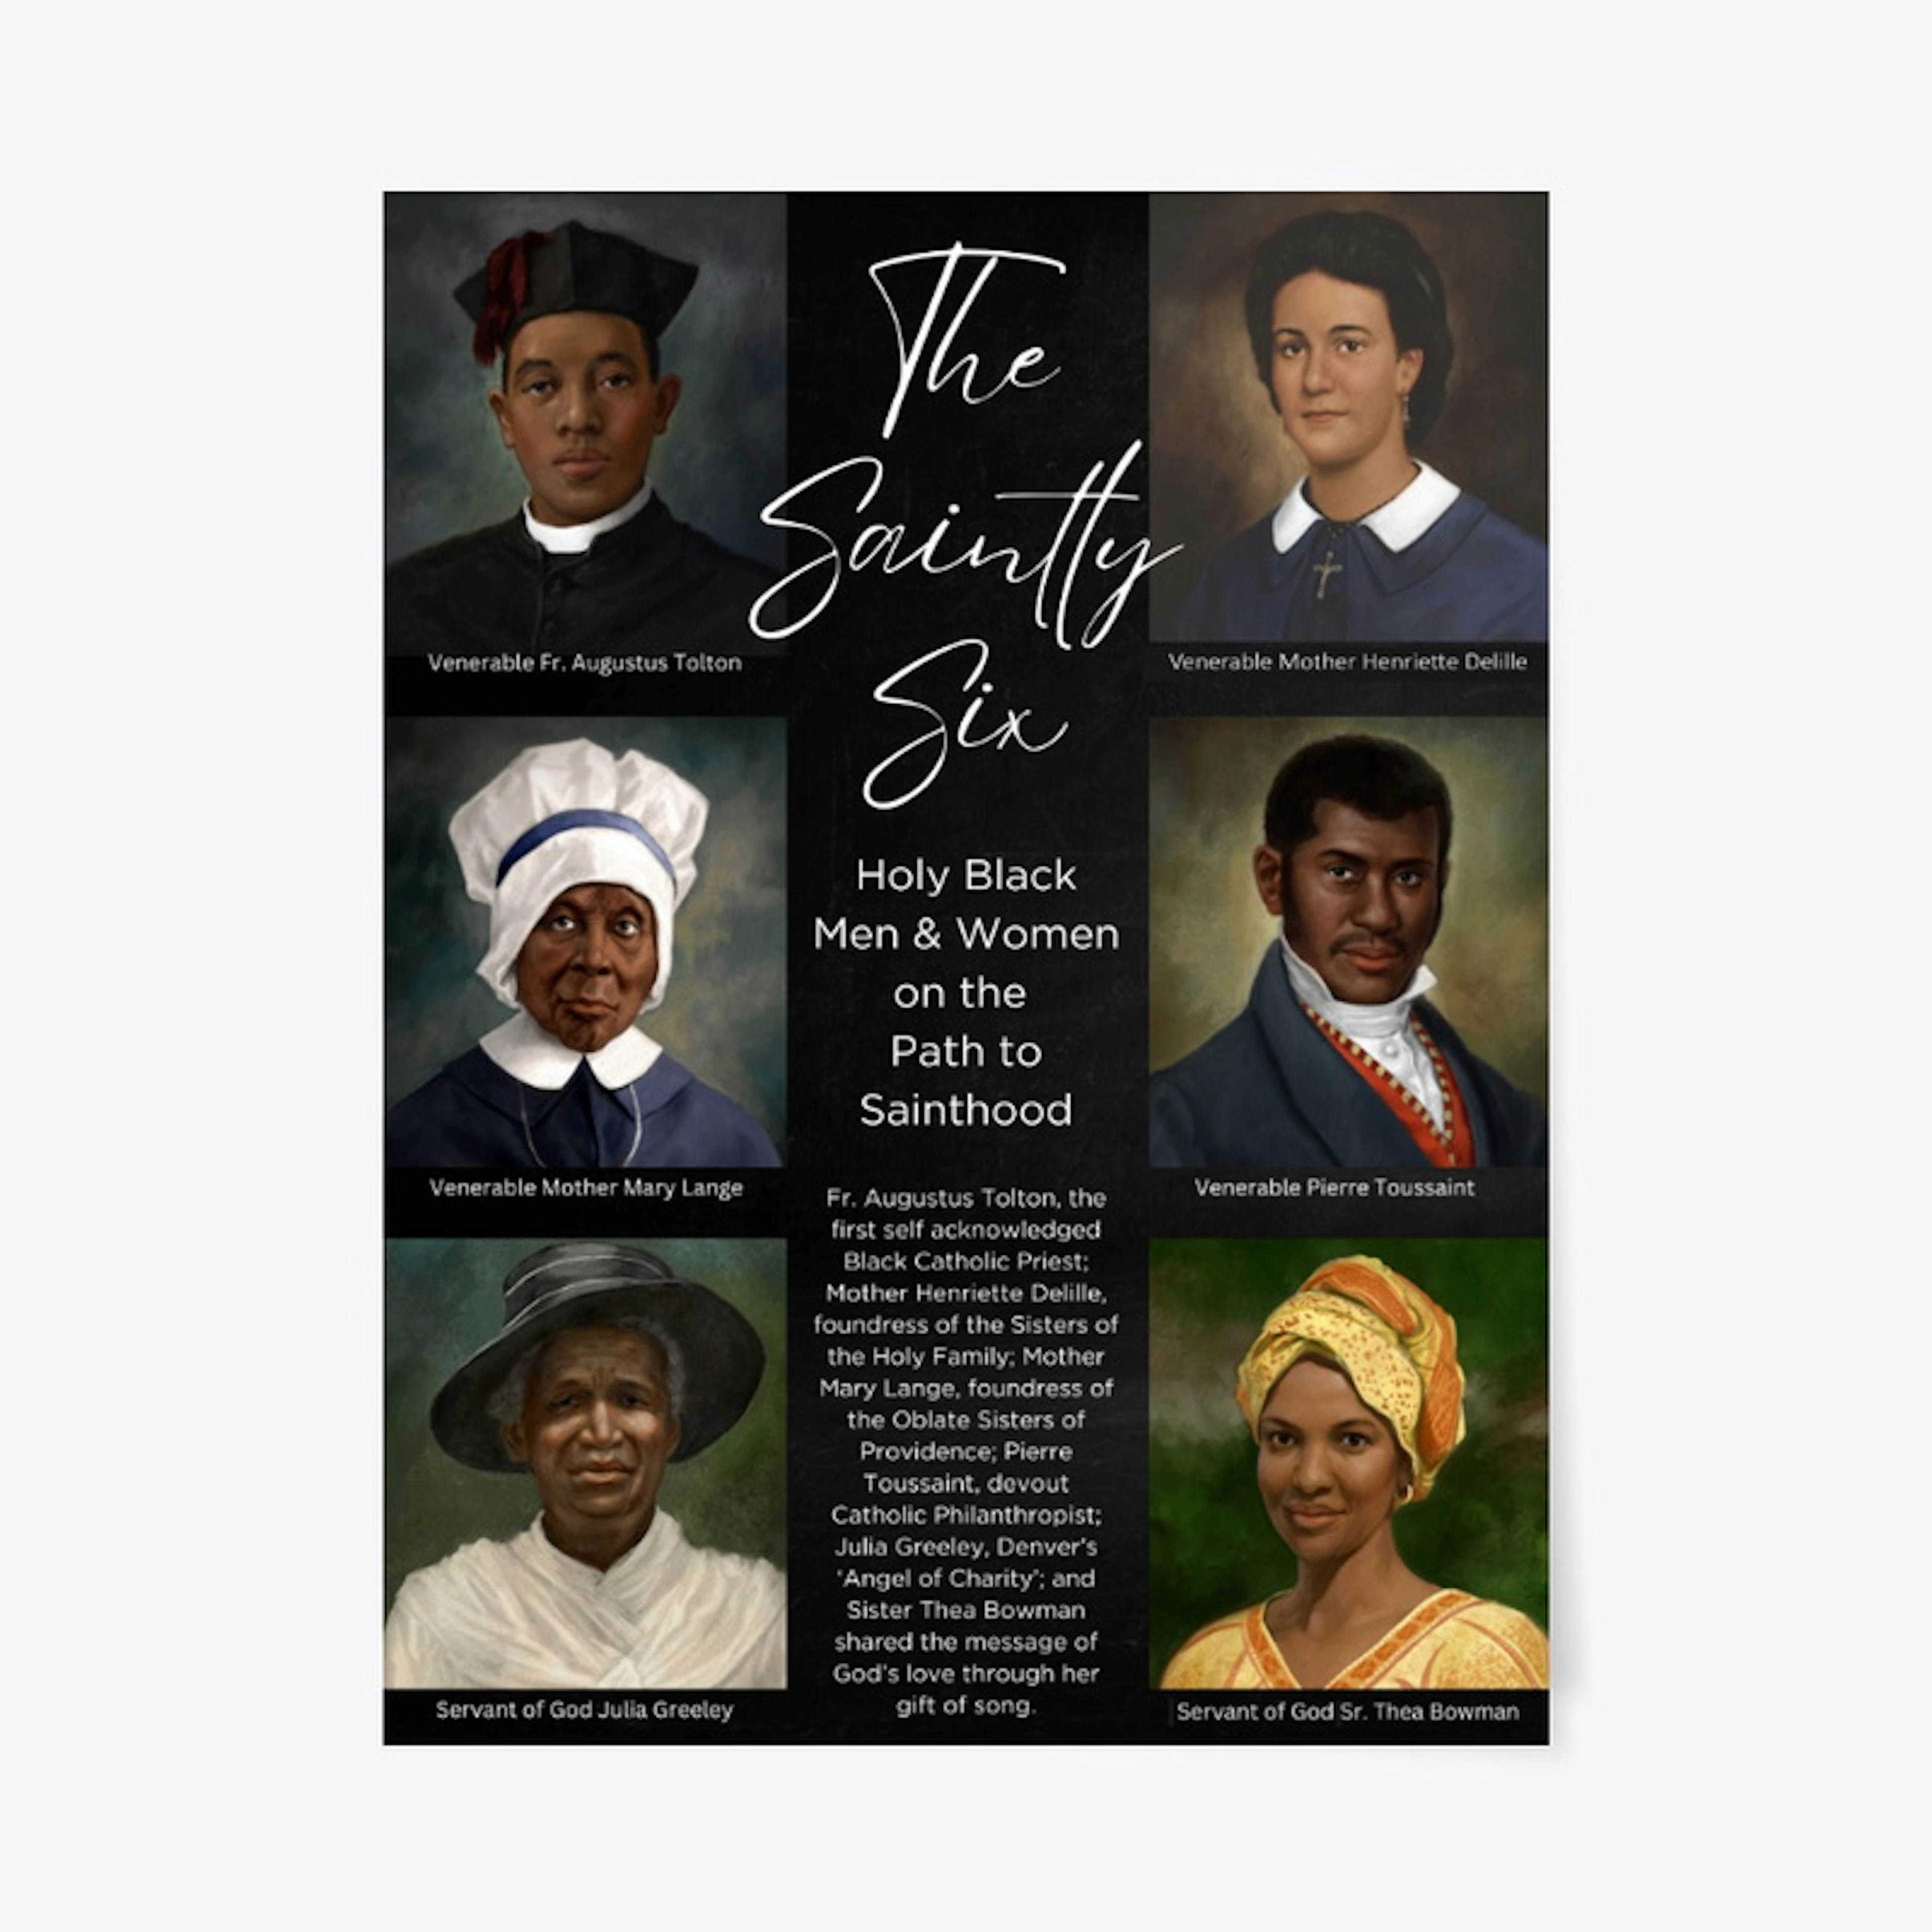 The Saintly Six Black Catholics